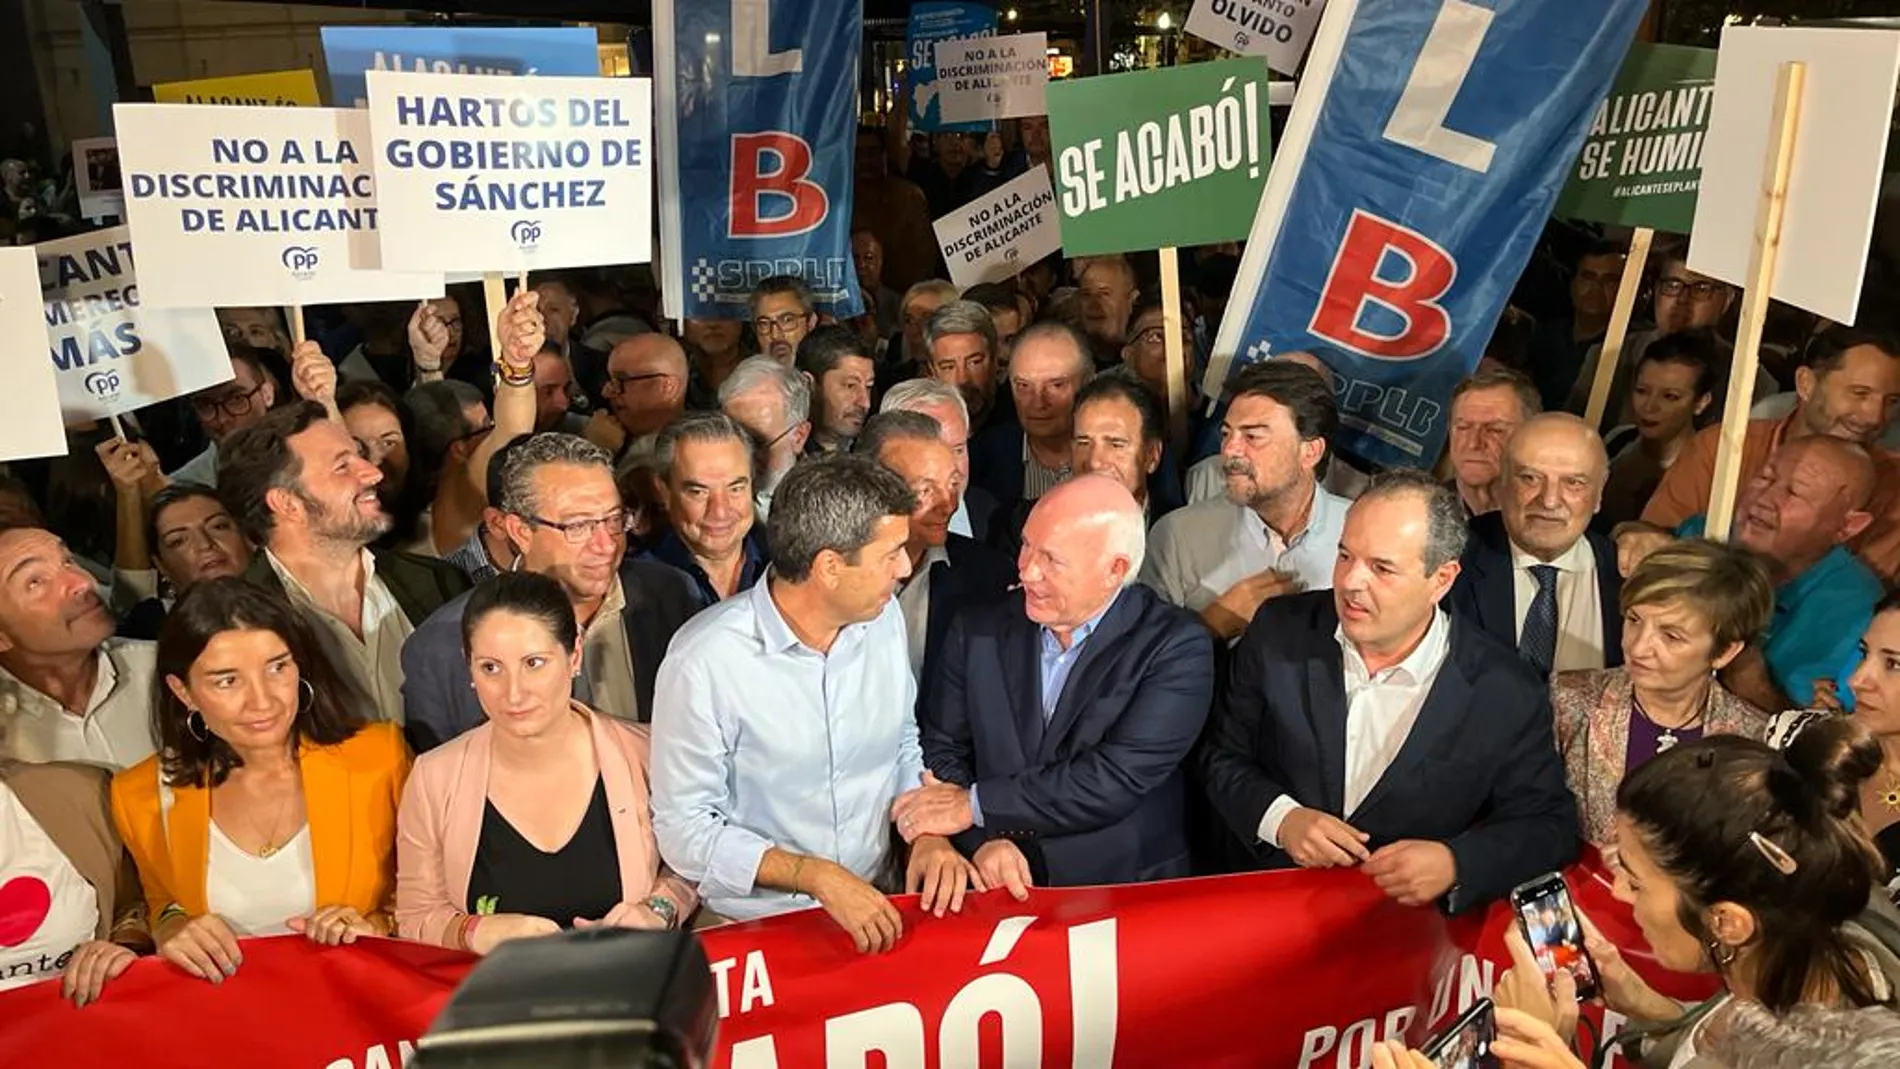 Representantes políticos y empresariales encabezan la manifestación en Alicante